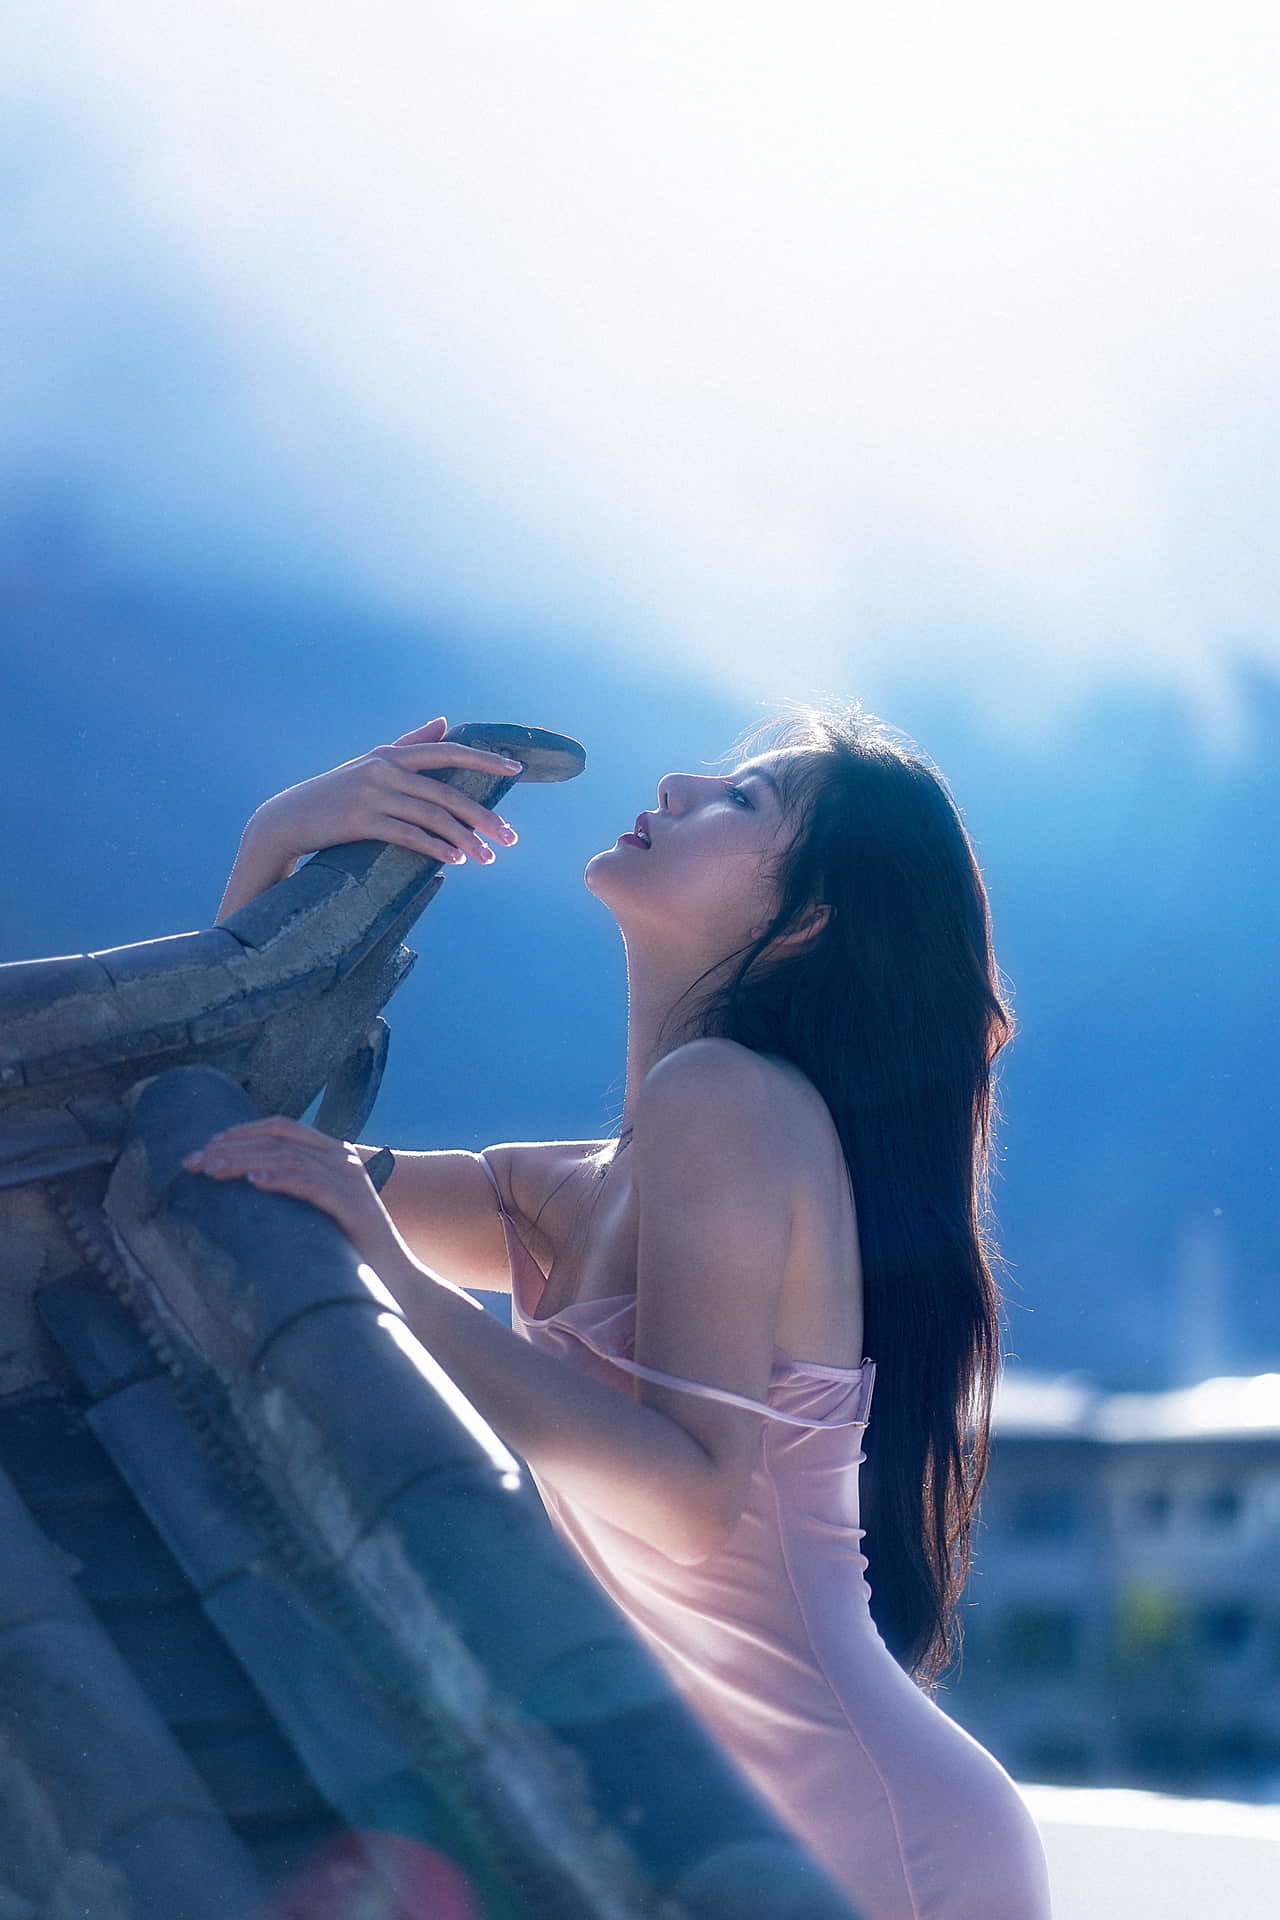 최근 유출에 따르면 슈퍼 인기 왕동의 젊은 모델 A'Zhu가 사진 촬영을 위해 옥상에 노출되어 섹시한 가슴과 날씬한 몸매를 가지고 있습니다.